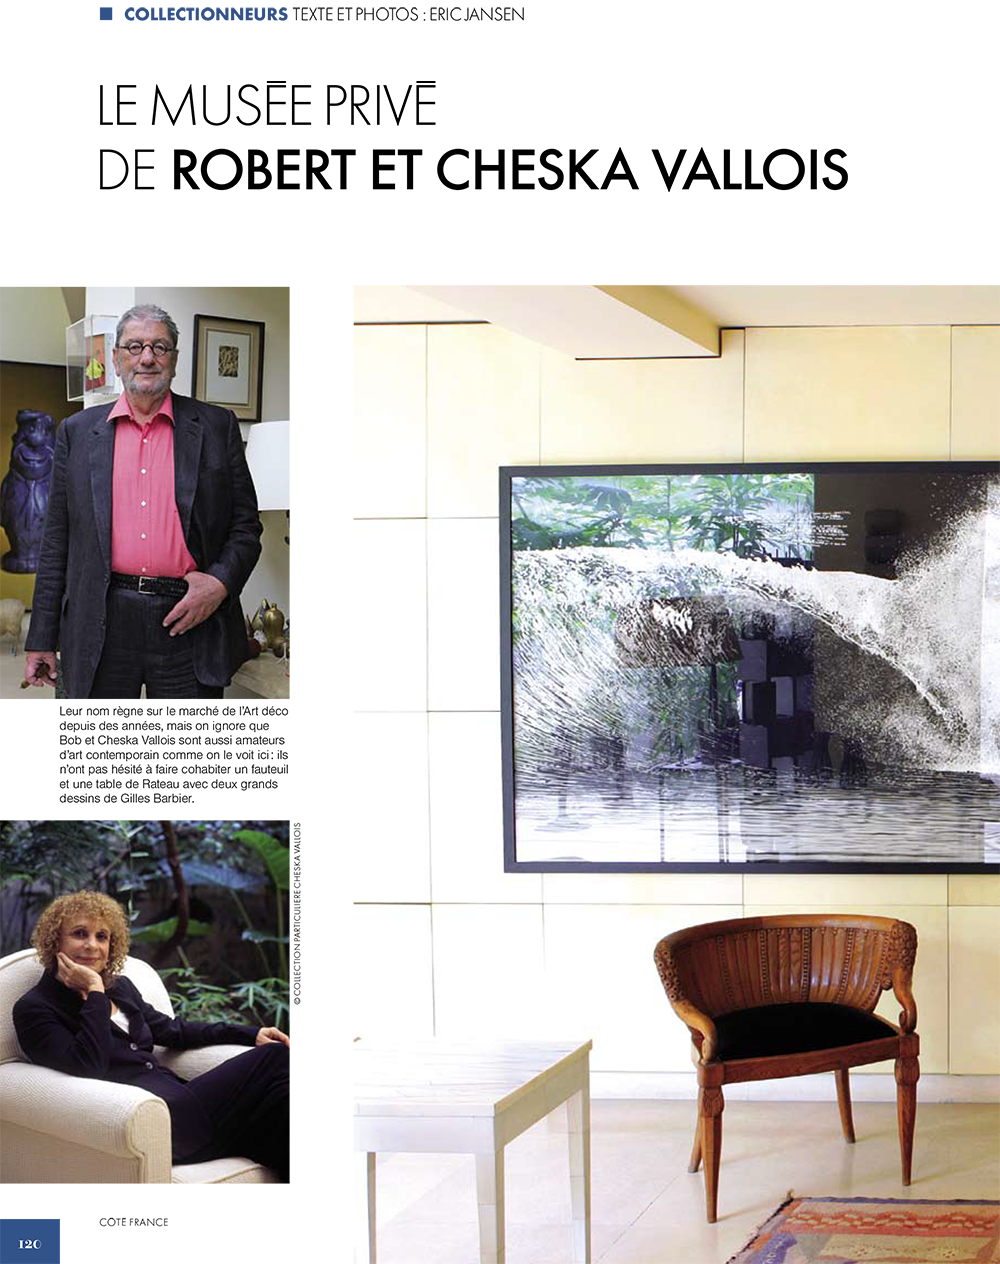 Le musée privé de Robert et Cheska Vallois